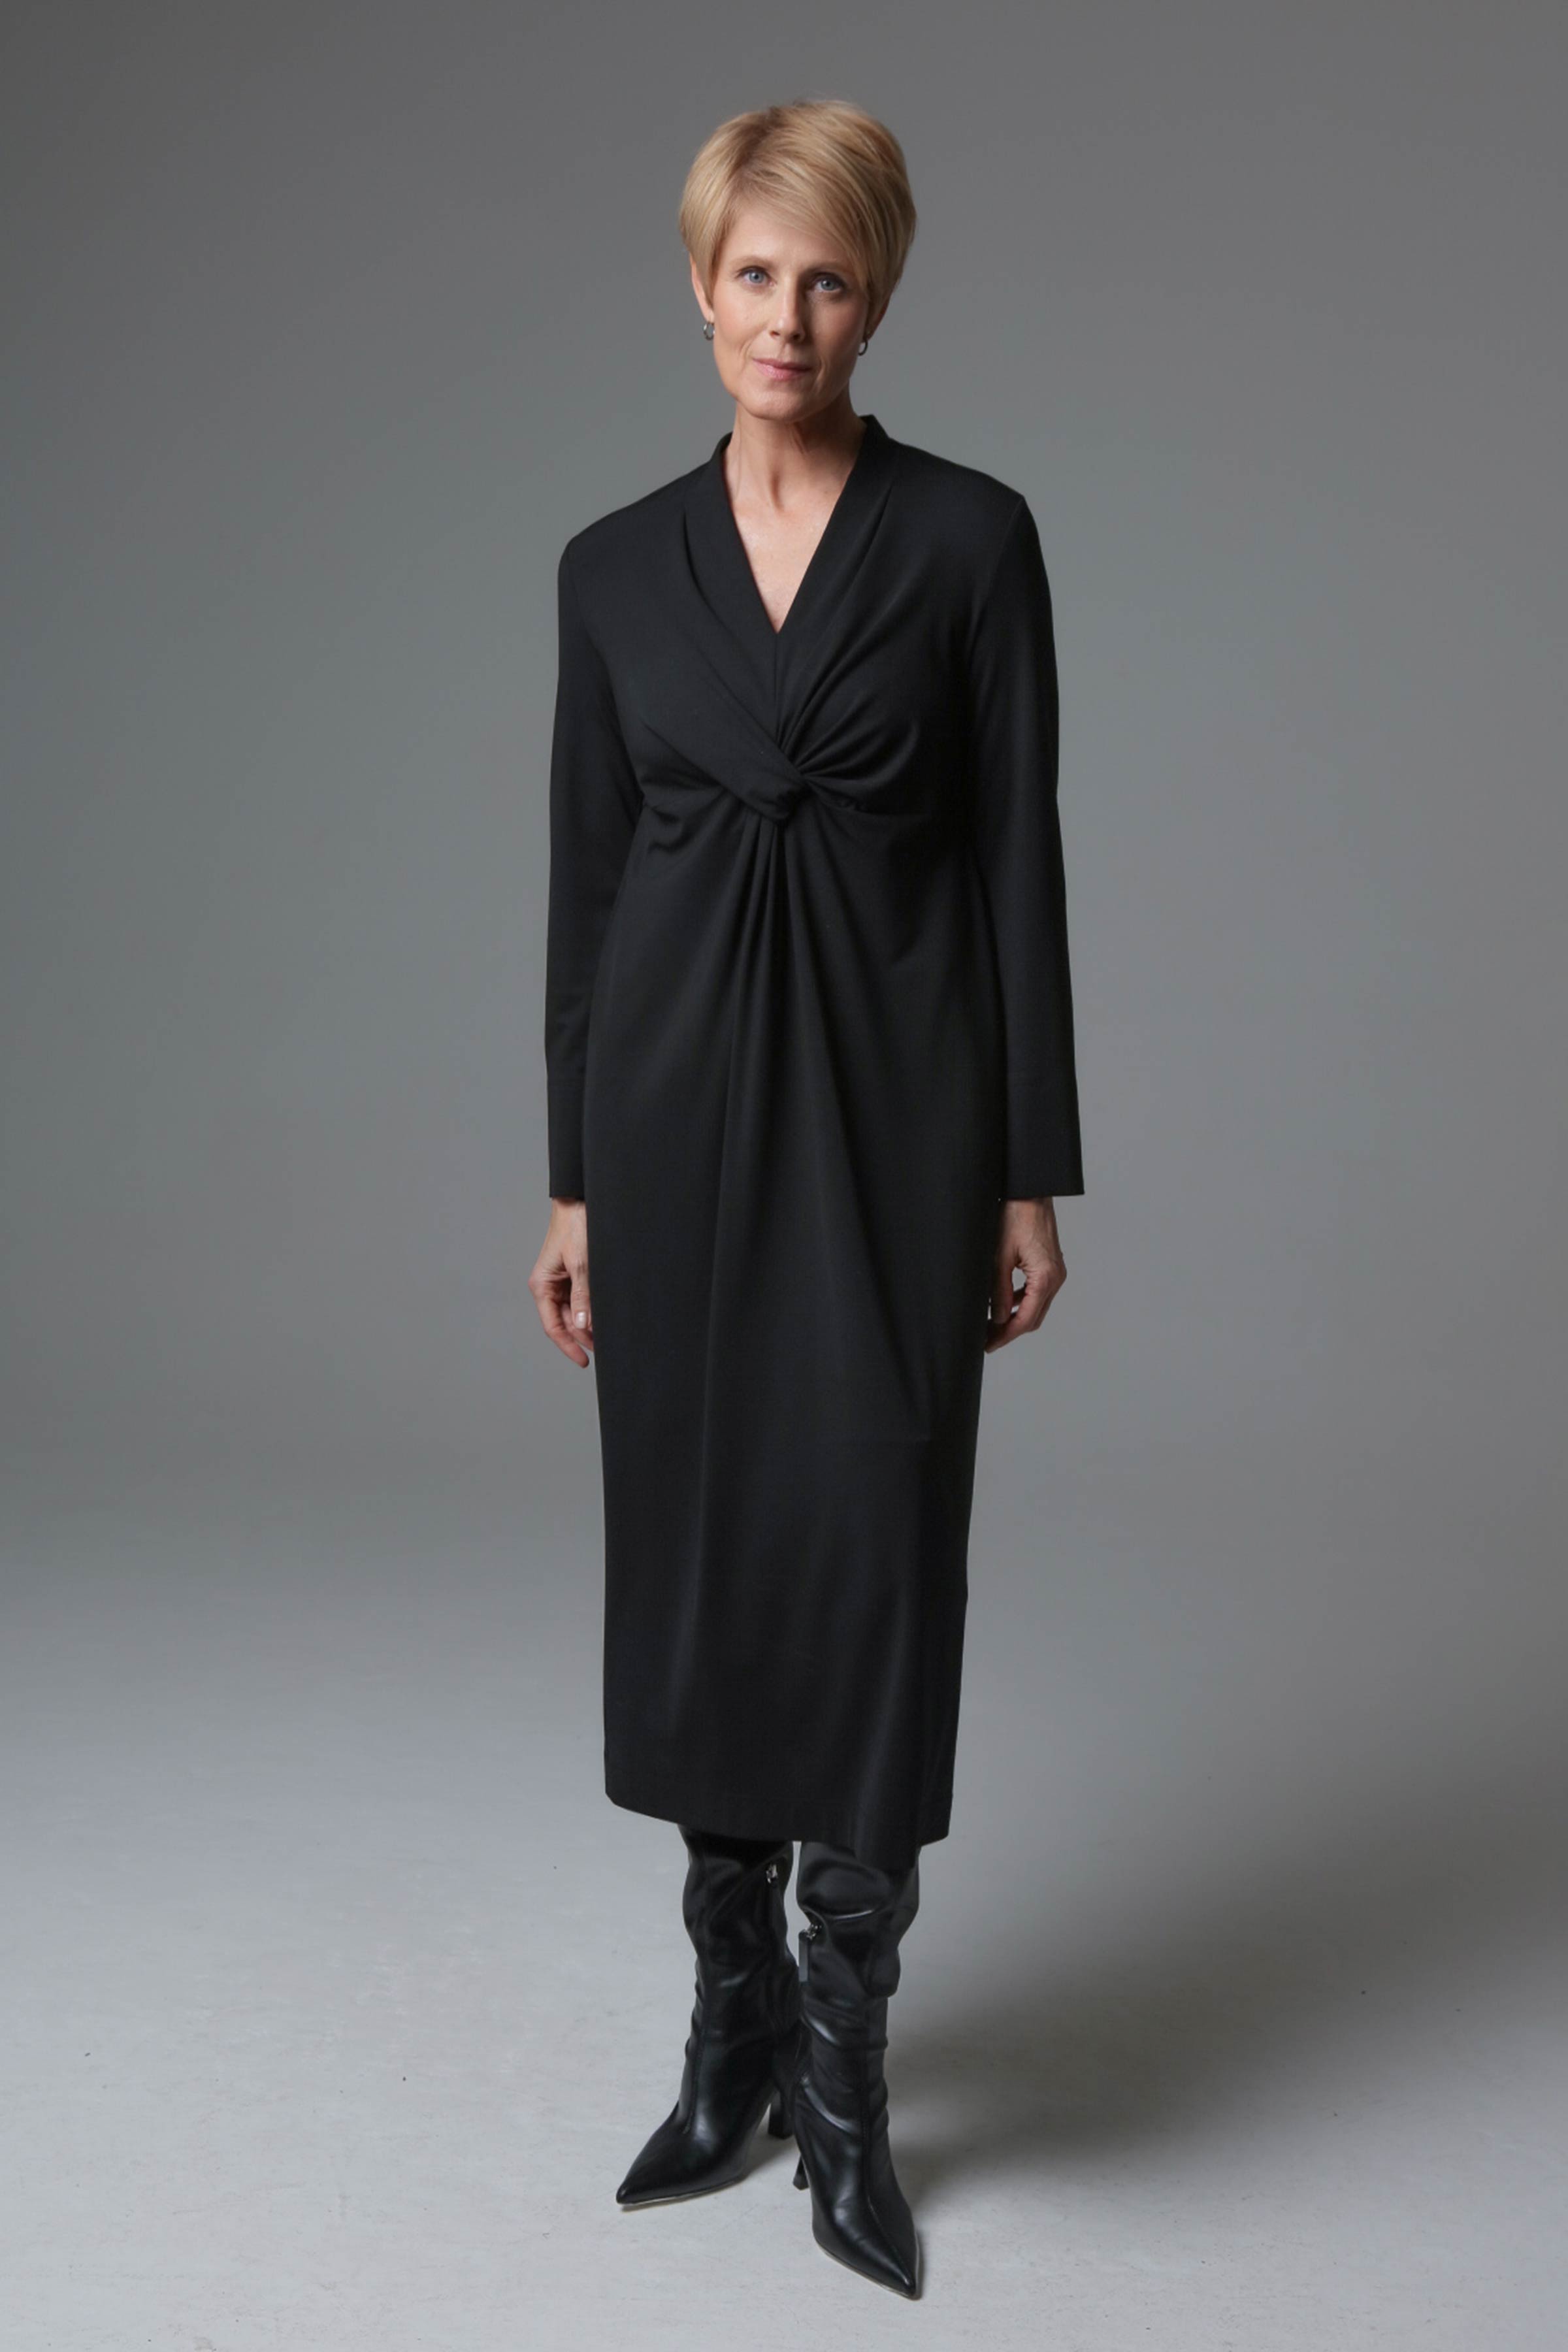 Платье Твист, джерси 00 Черный (noir) от Lesel (Лесель)! Заказывайте по ✆ 8 (800) 777 02 37